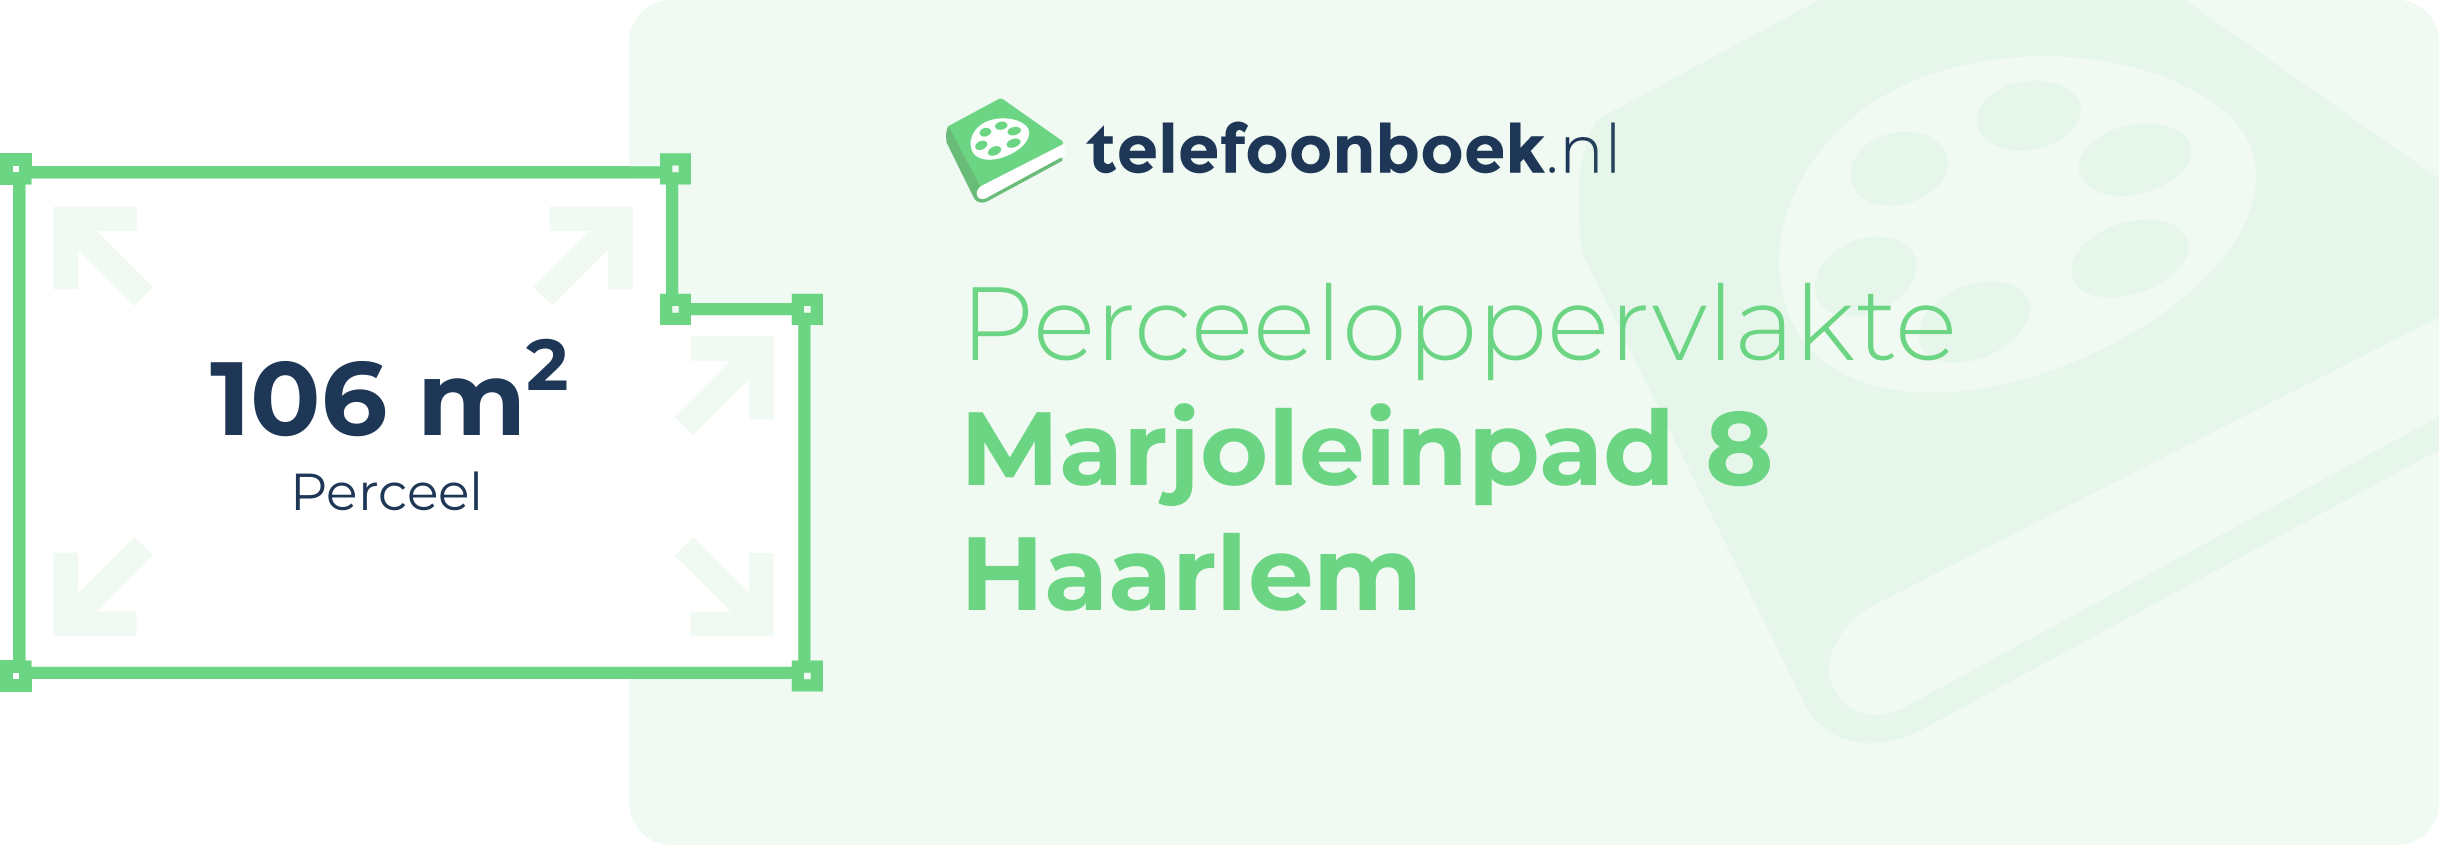 Perceeloppervlakte Marjoleinpad 8 Haarlem